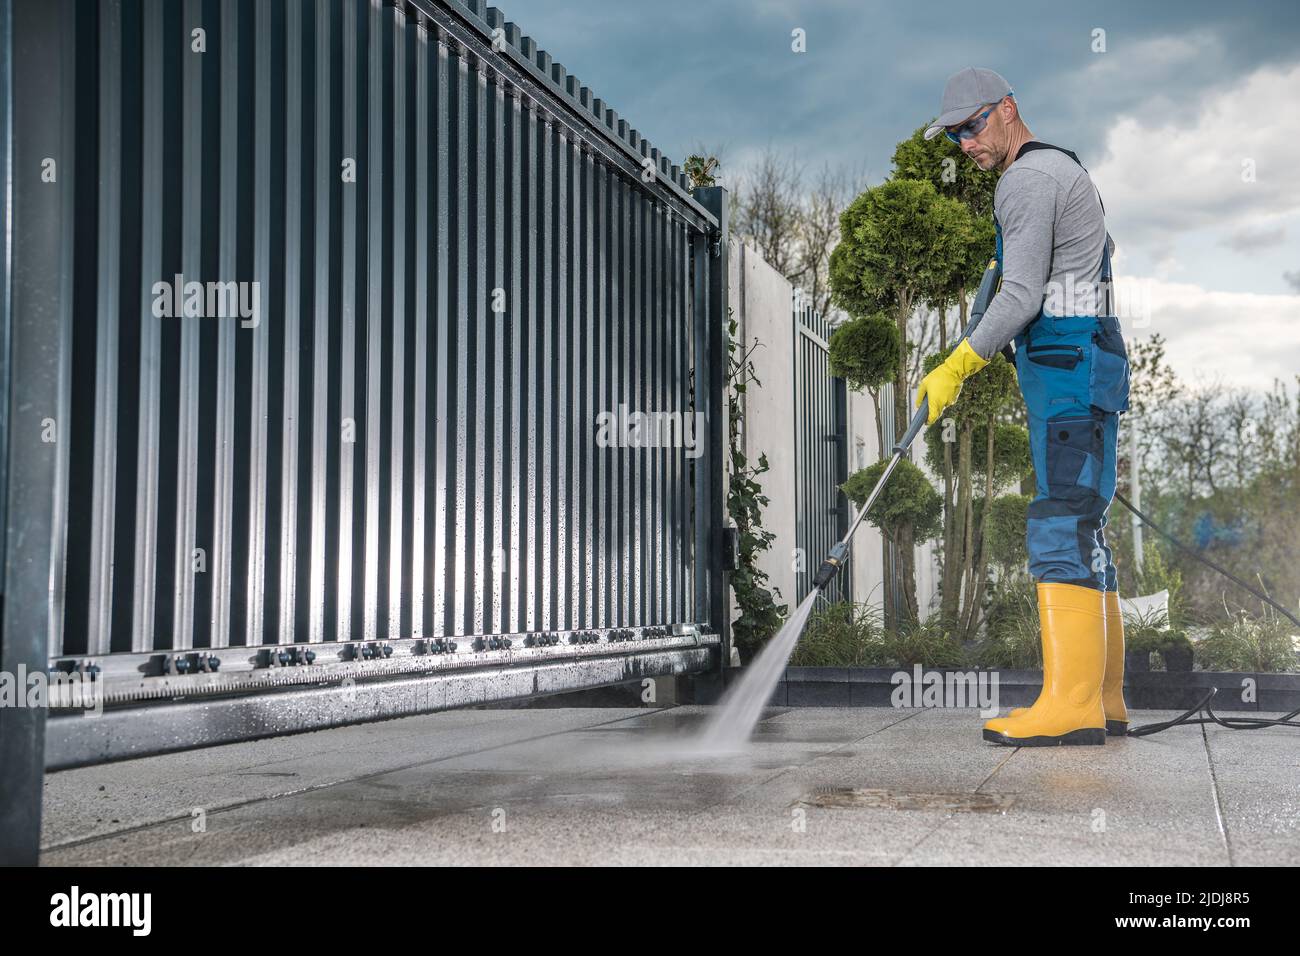 Travailleur caucasien dans son travail porter des bottes en caoutchouc jaune nettoyer l'allée en béton devant la porte d'entrée à l'aide d'un lavage à pression professionnel Banque D'Images